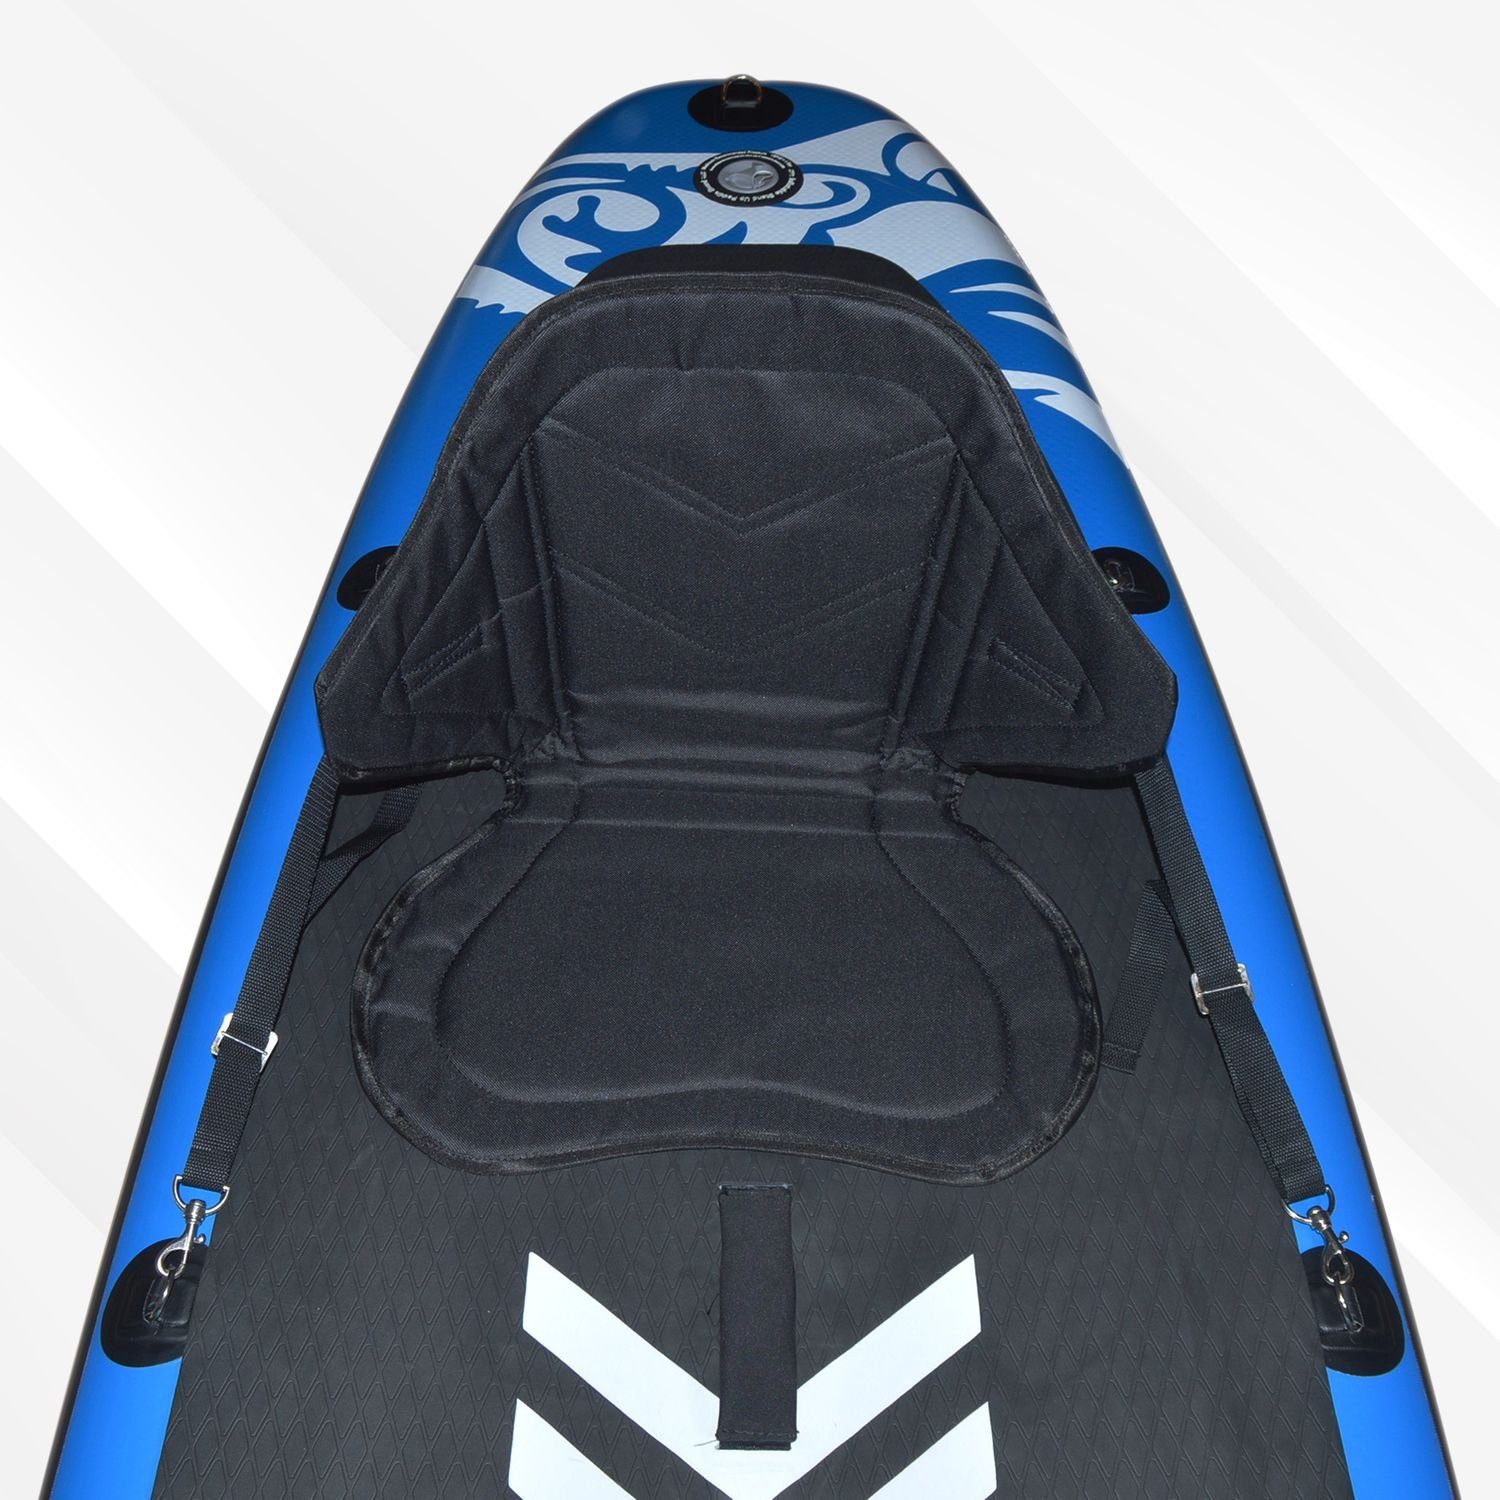 einsetzbar variabel integrierter elastisch (verstellbare für Gurtbänder Boards, SUP-Rückenlehne und 24Move Sitz universal, gepolstert Paddle SUP Kajak Tasche),